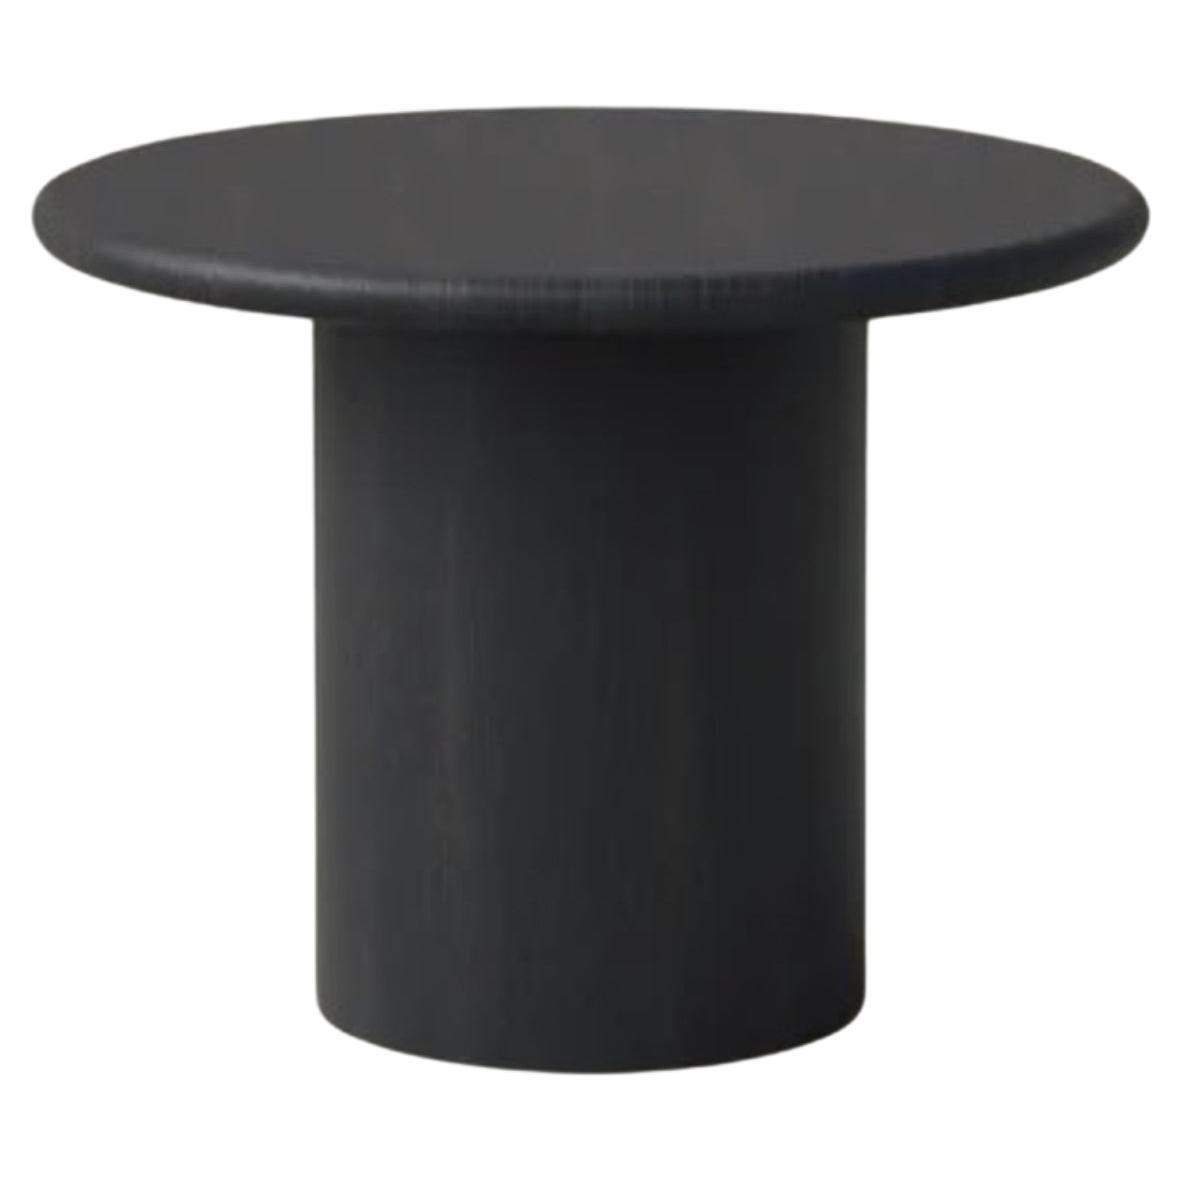 Table basse en forme de goutte d'eau, 500, chêne noir / chêne noir